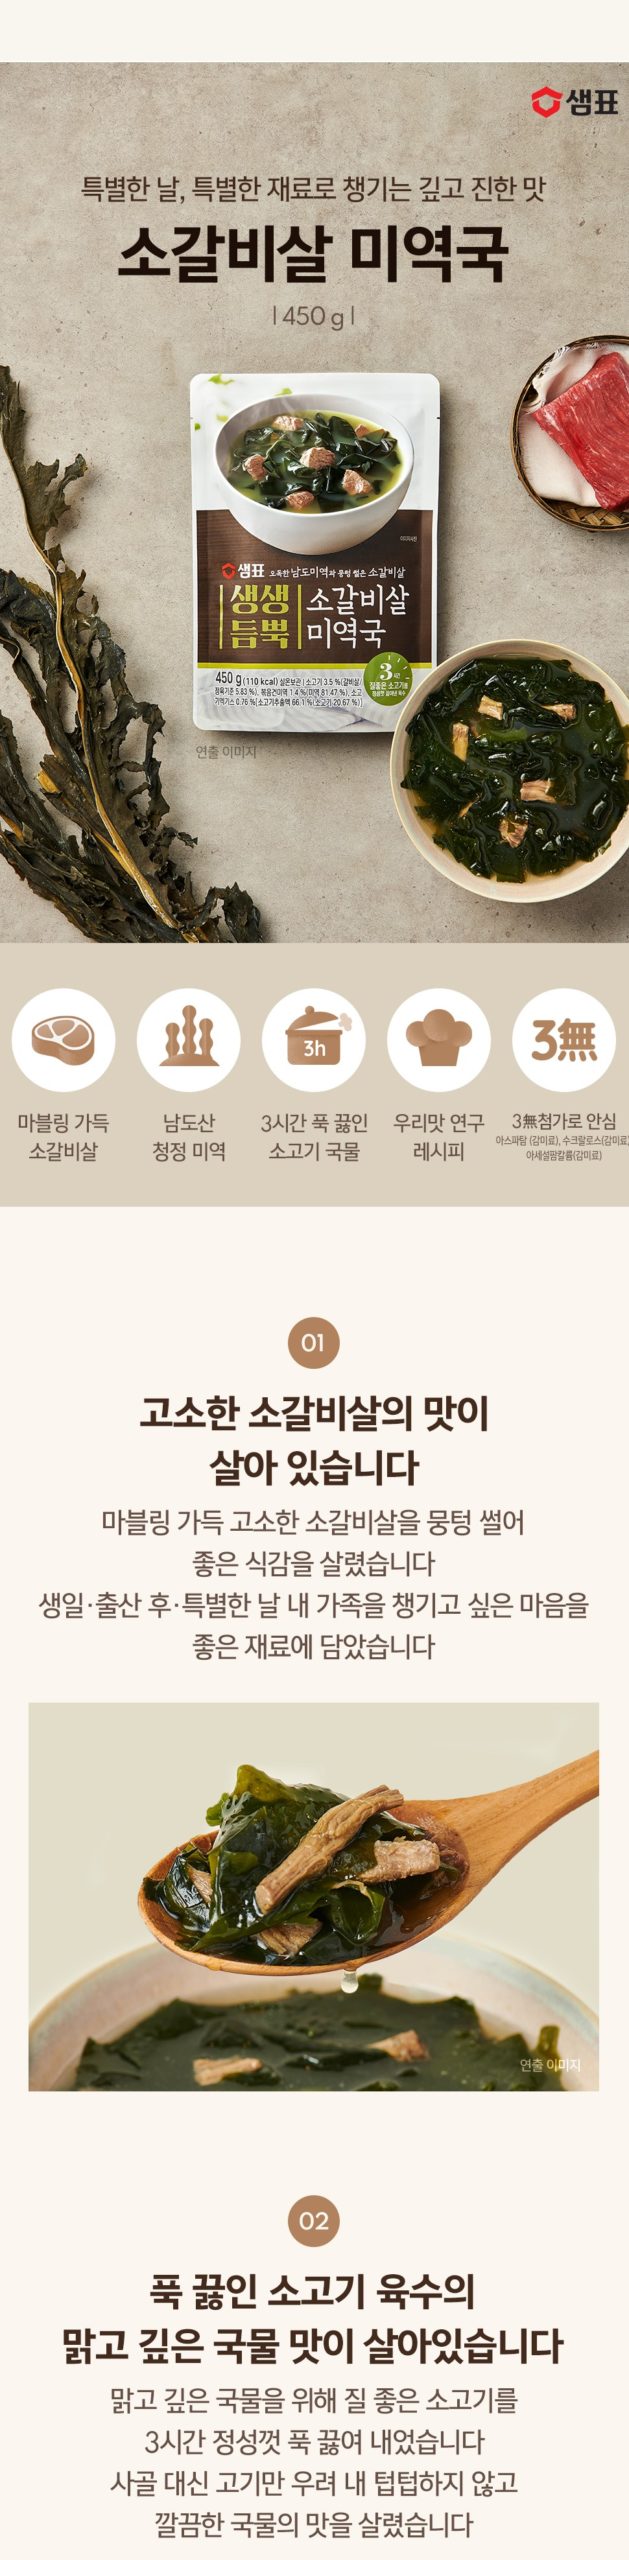 韓國食品-[샘표] 생생듬뿍 소갈비살 미역국 450g